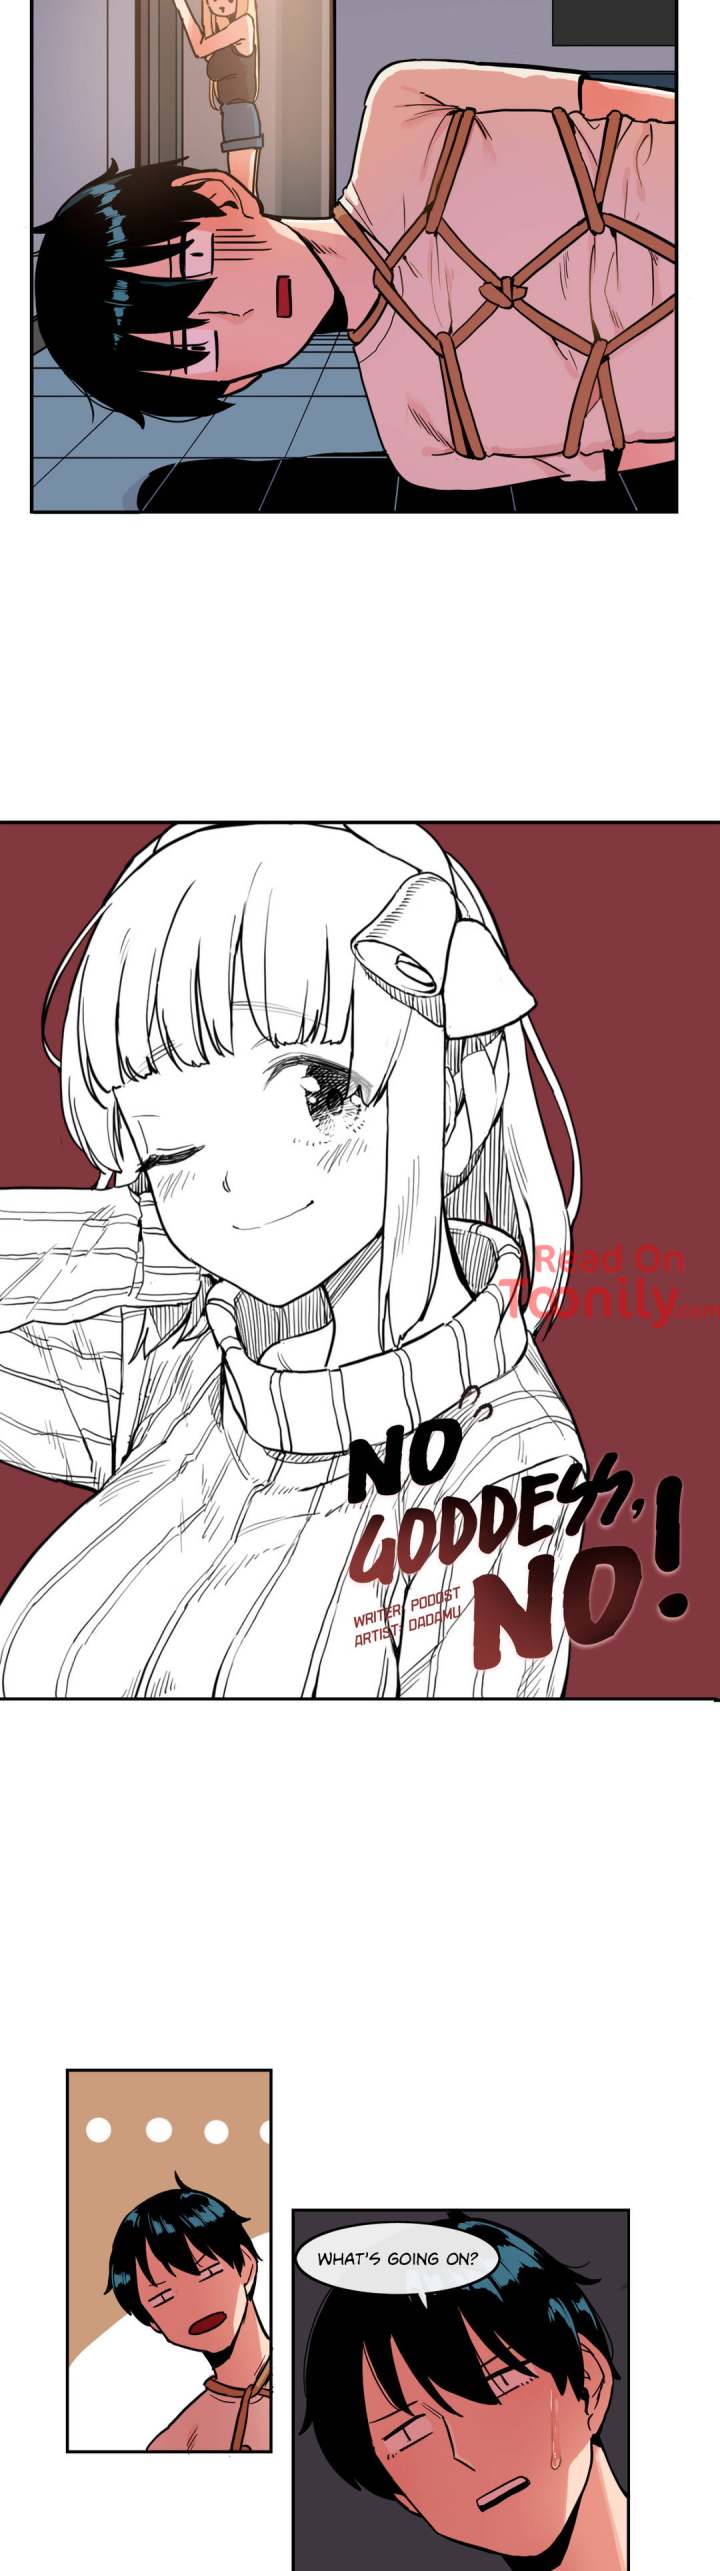 No Goddess, No! - Chapter 21 Page 3